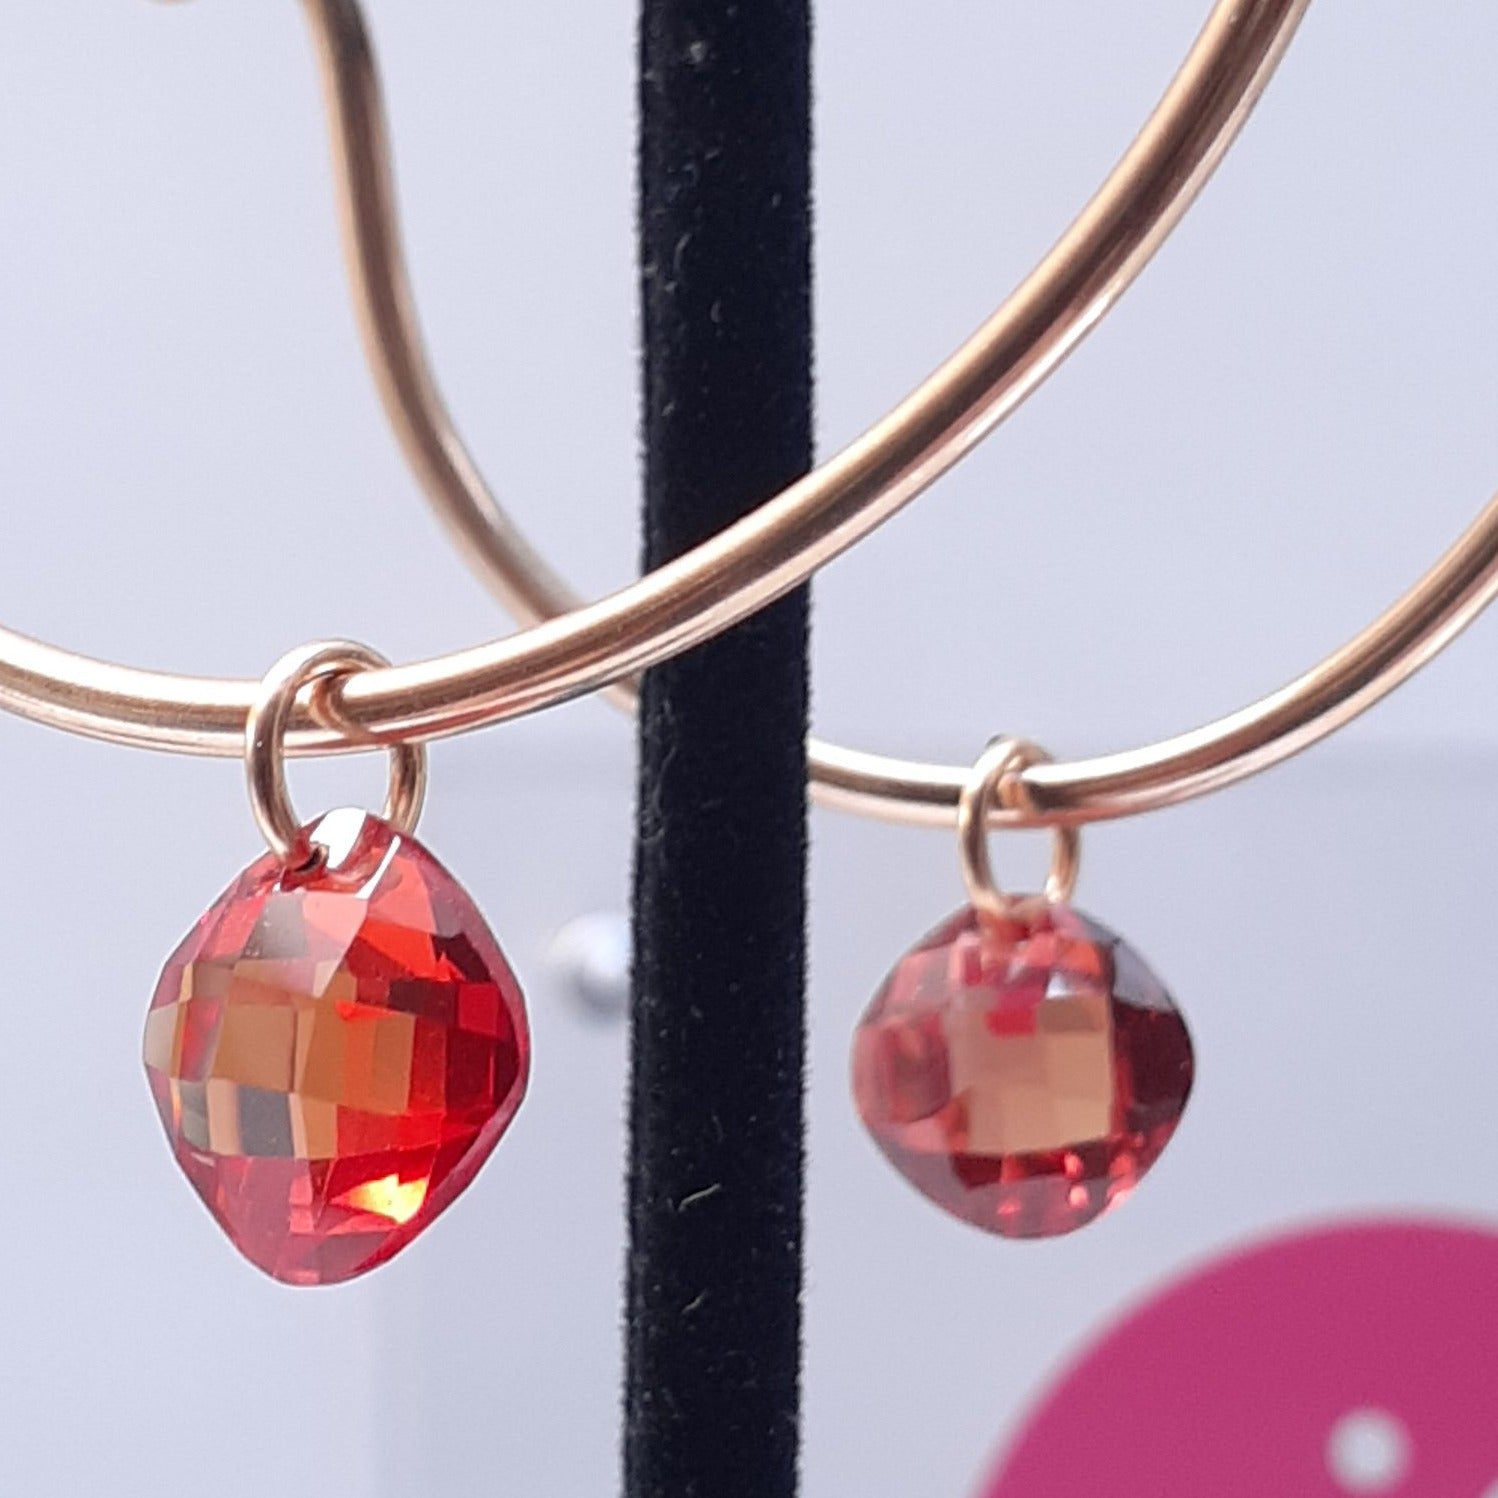 Hammered Gold Hoop Earrings with Gemstones